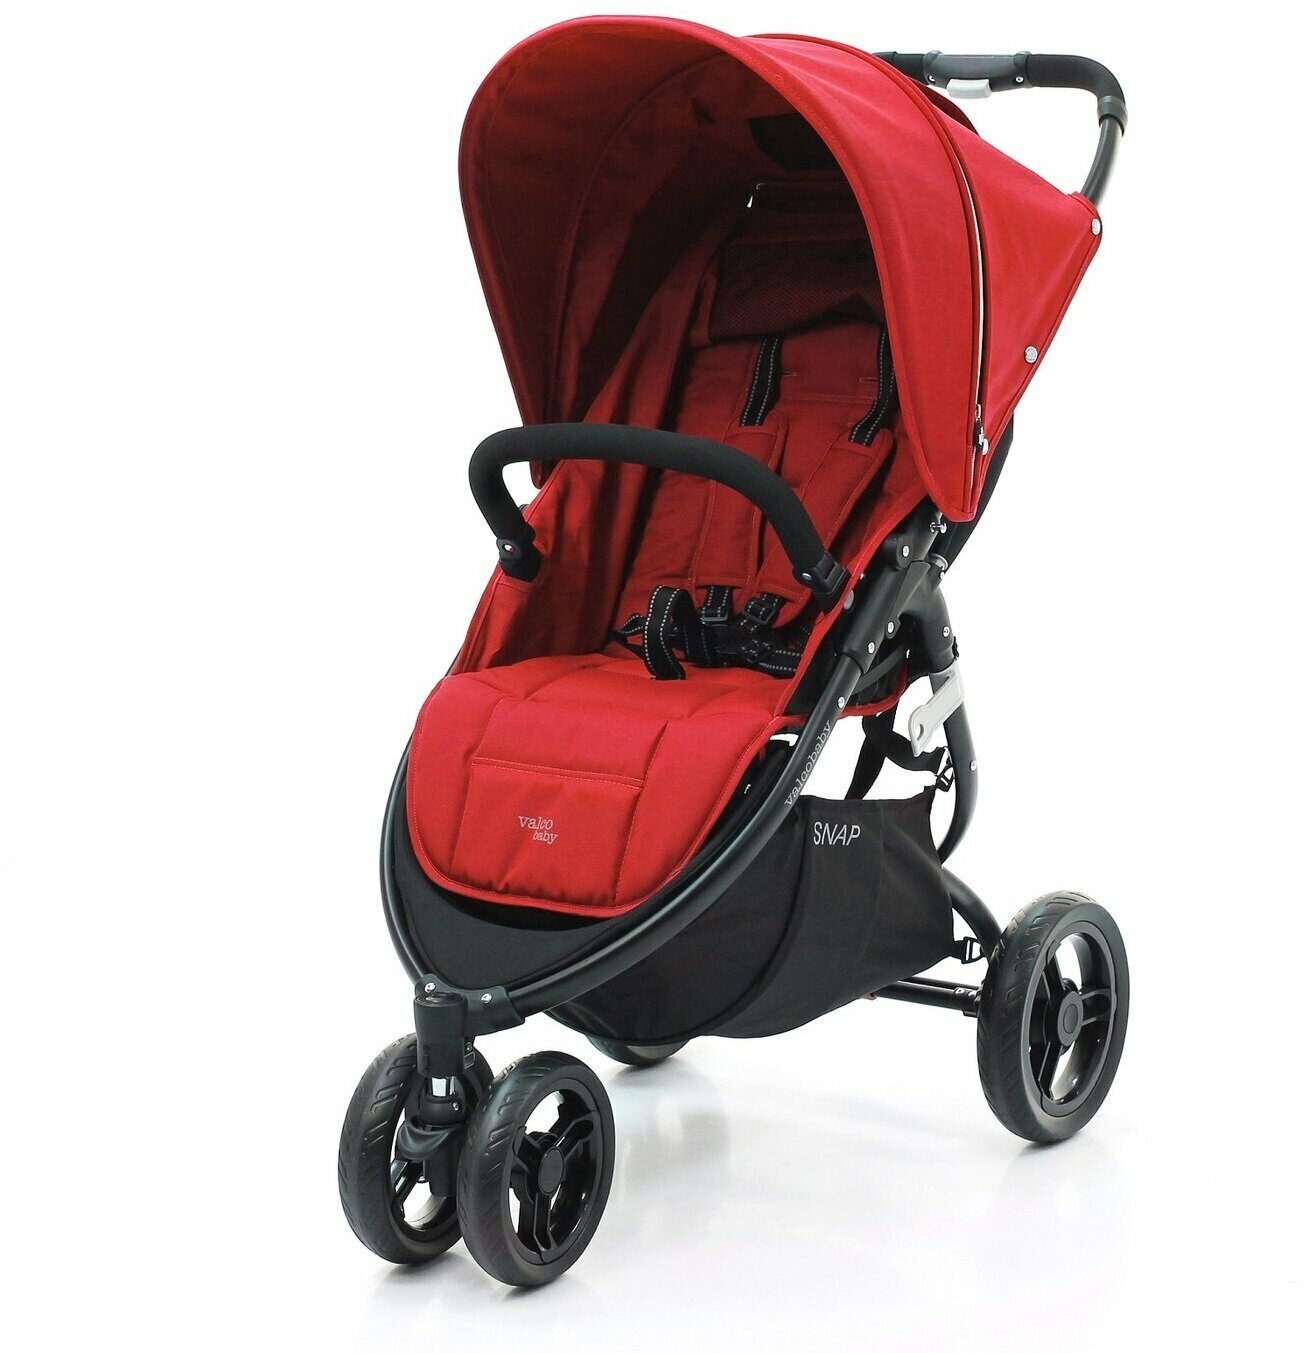 Легкая прогулочная коляска Valco Baby Snap, цвет: Fire Red